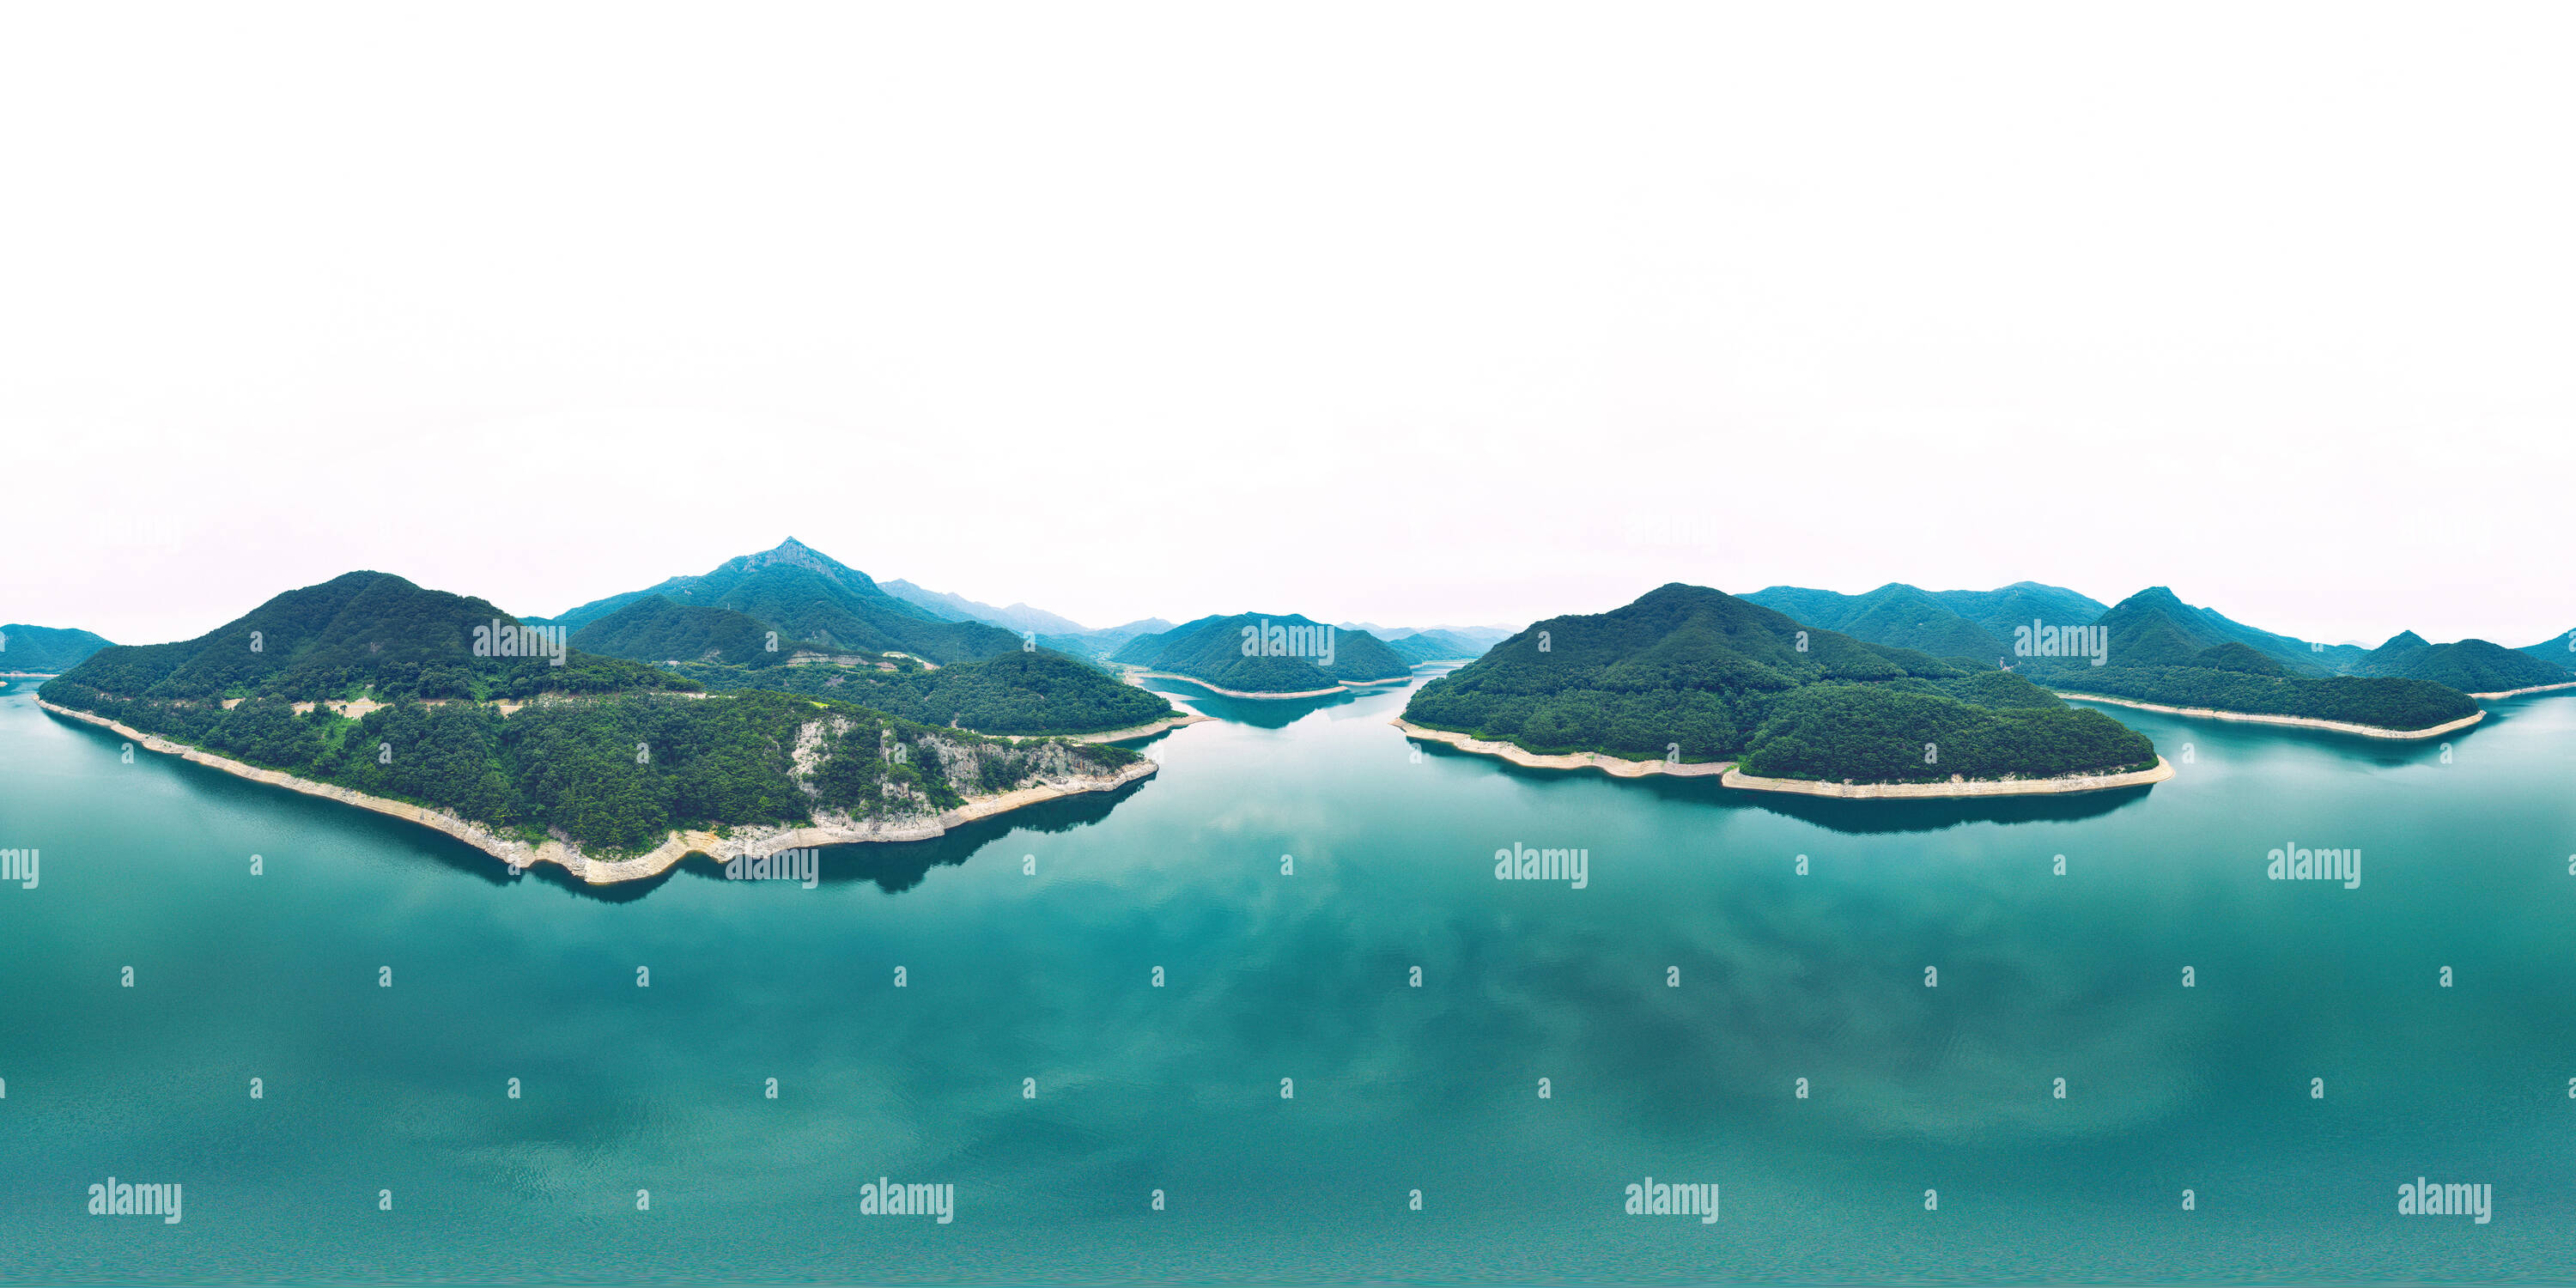 Vue panoramique à 360° de Damyang, Corée du Sud - 24 juillet 2019 Damyang Antenne 360 Lac Vue Panoramique sur le lac de Damyang.